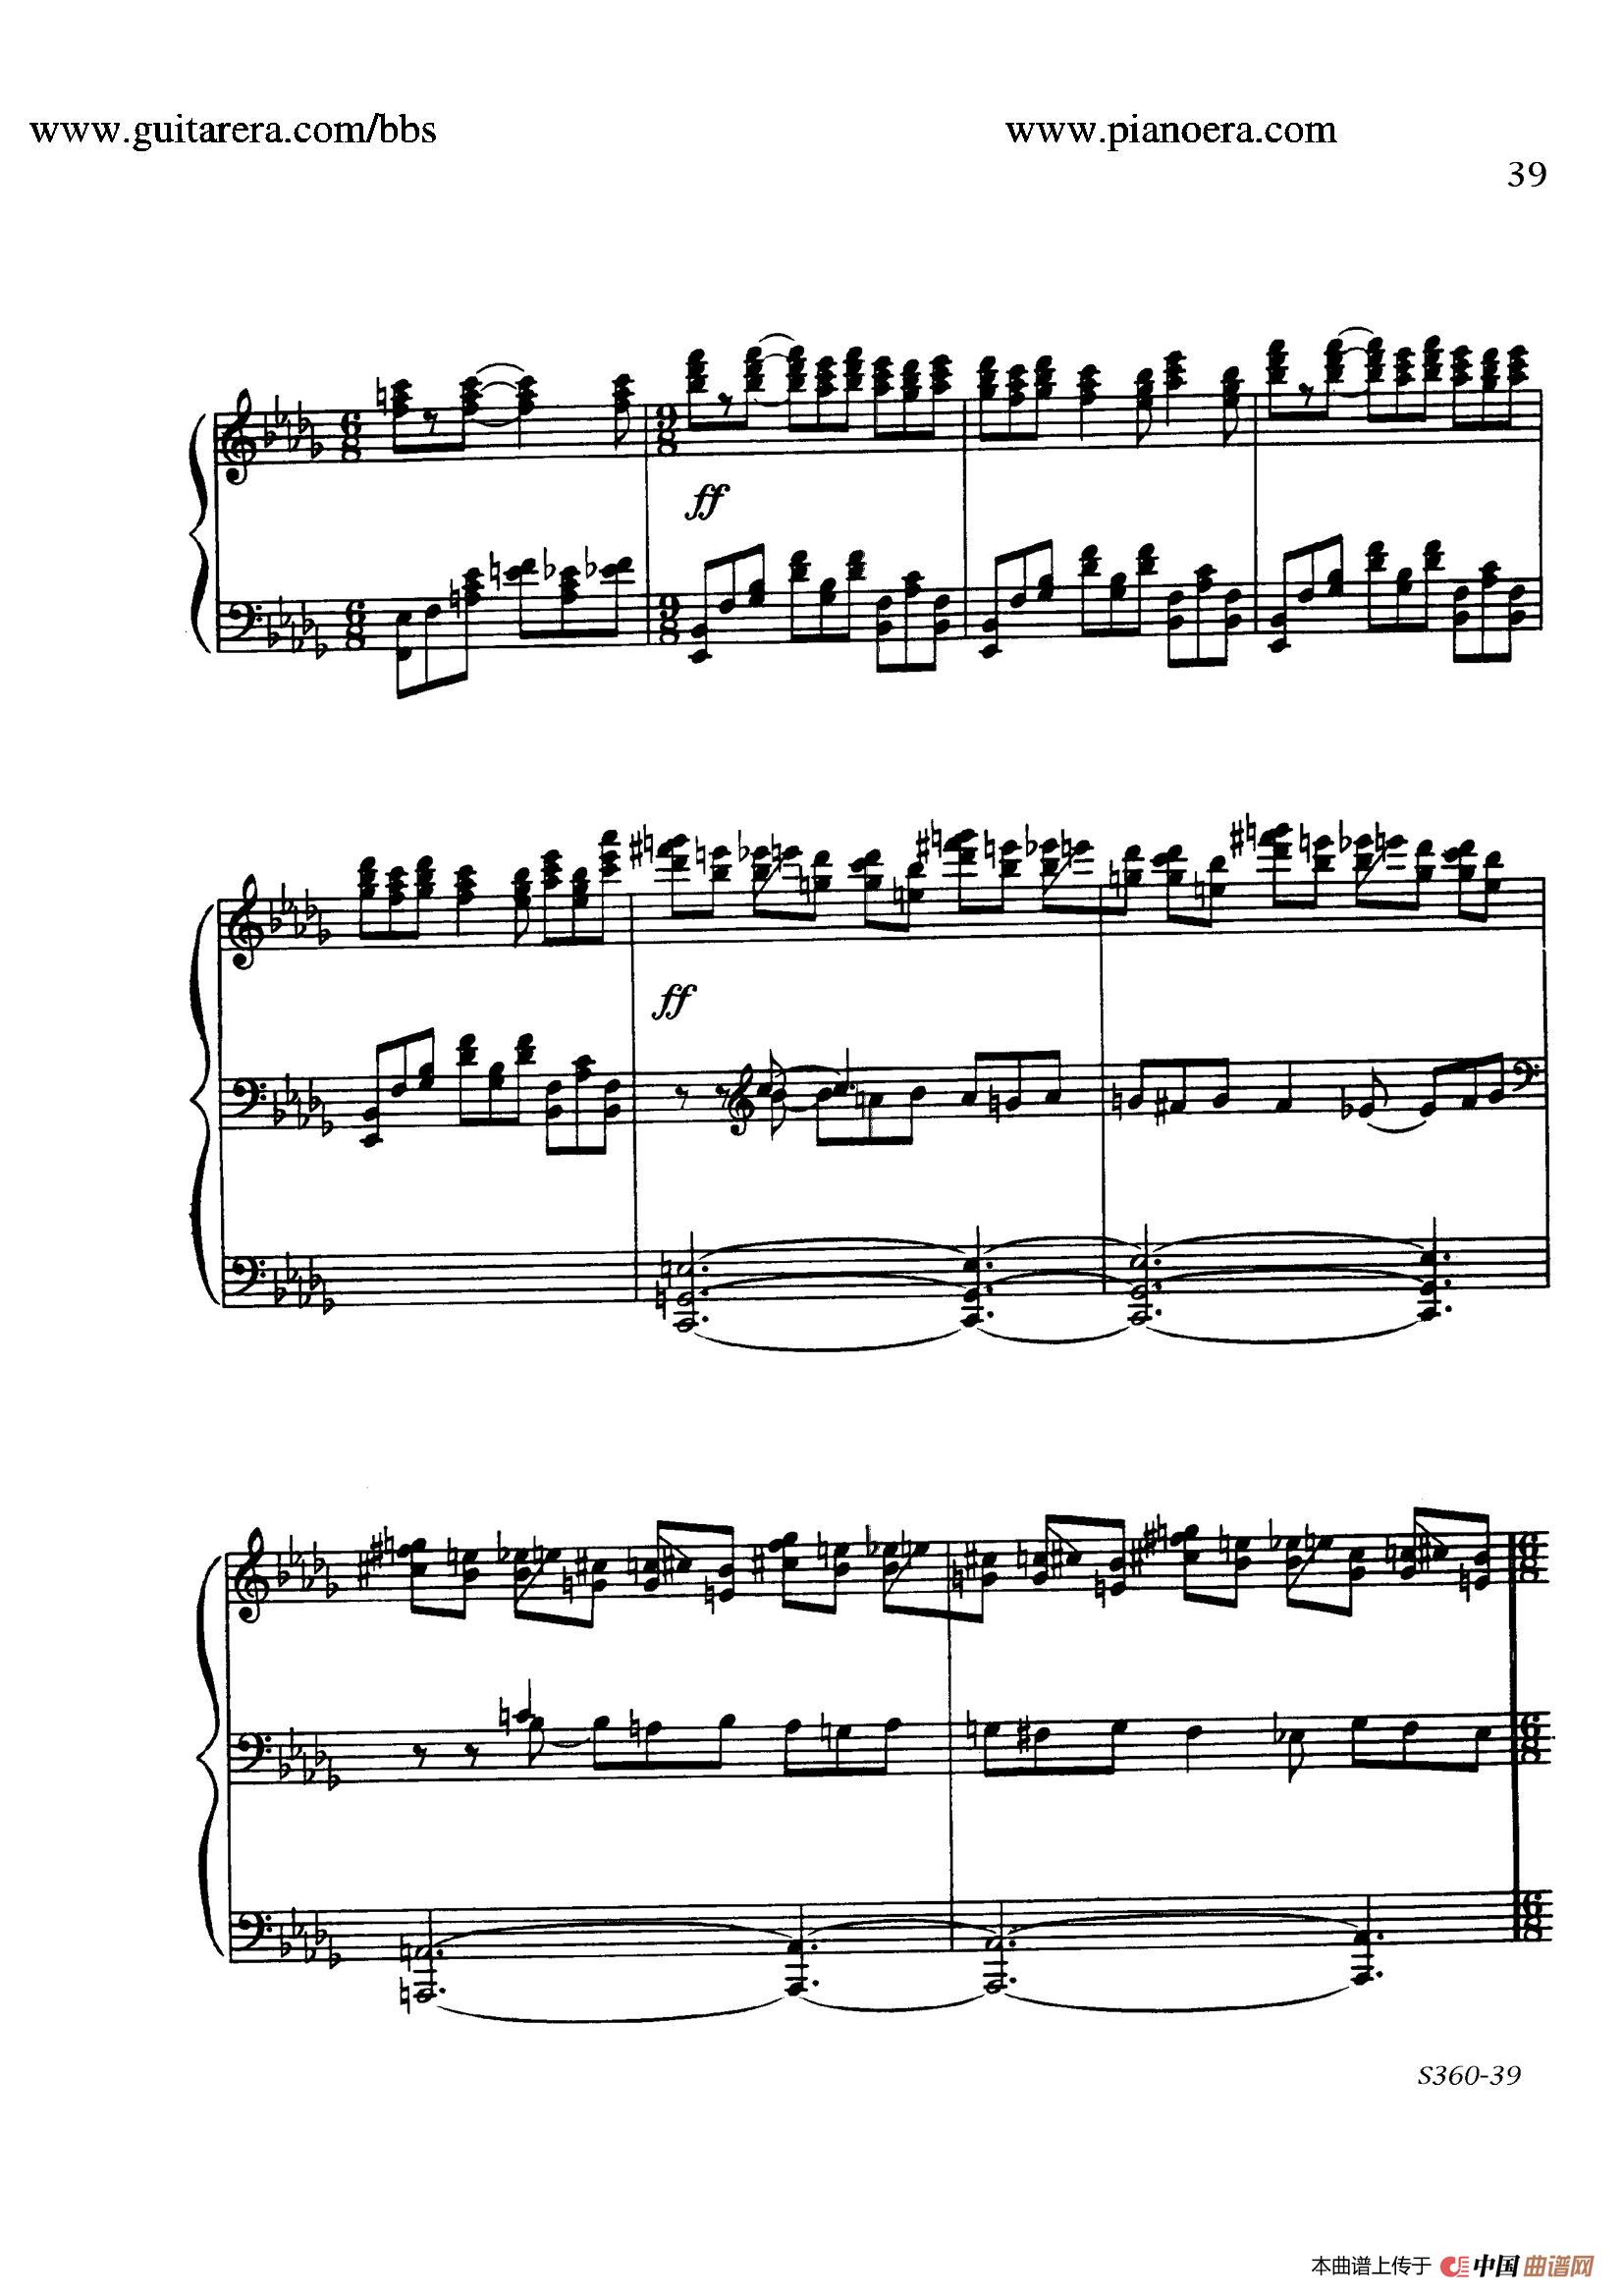 《Fourth Piano Sonata S.360》钢琴曲谱图分享